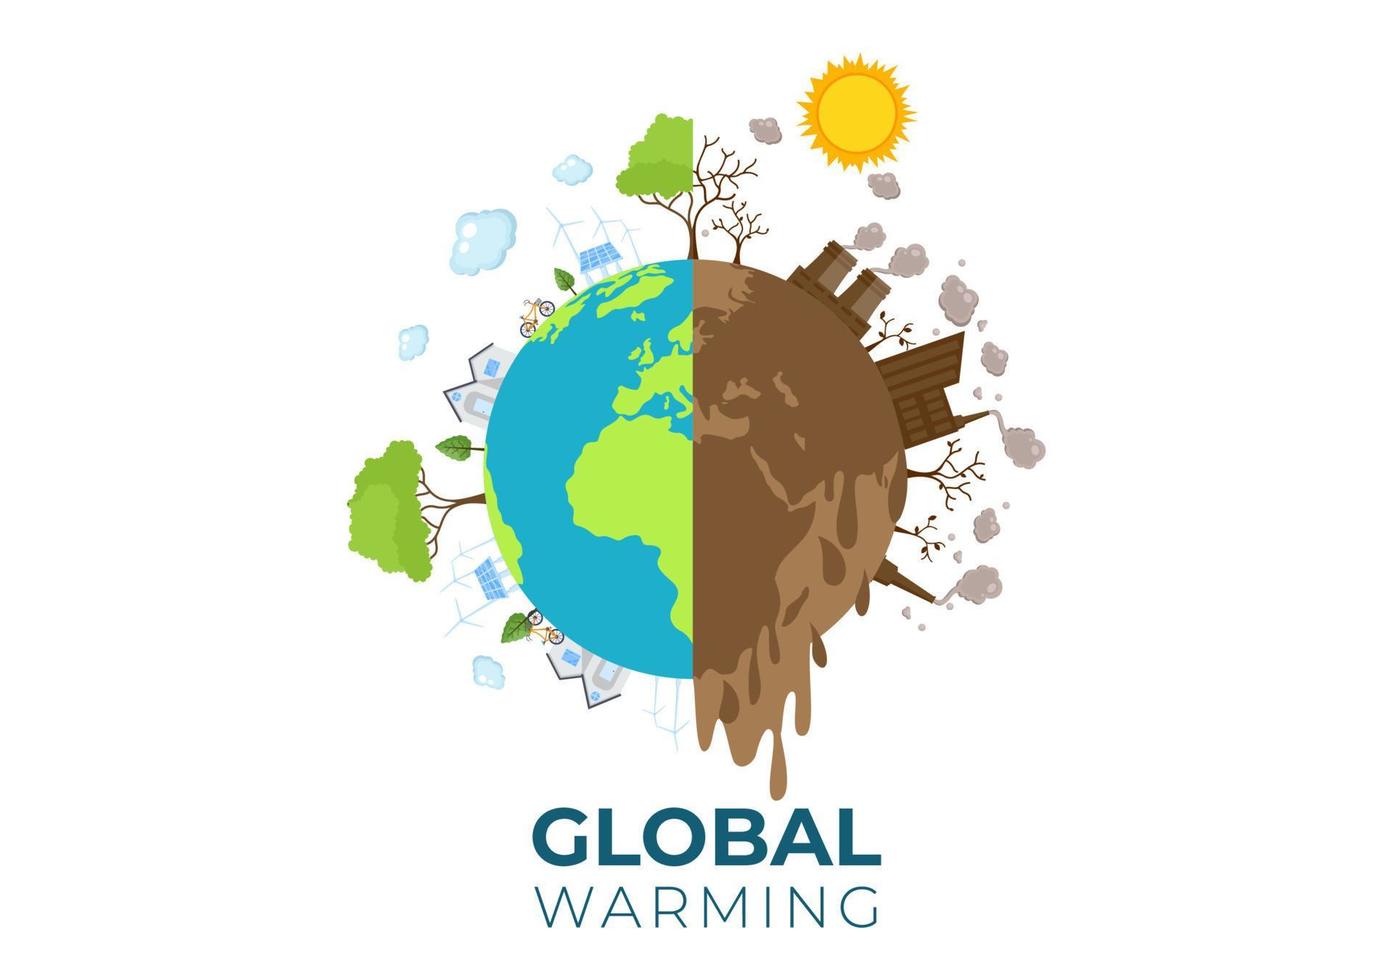 global uppvärmning tecknad stilillustration med planeten jorden i ett smältande eller brinnande tillstånd och bild sol för att förhindra skador på naturen och klimatförändringar vektor